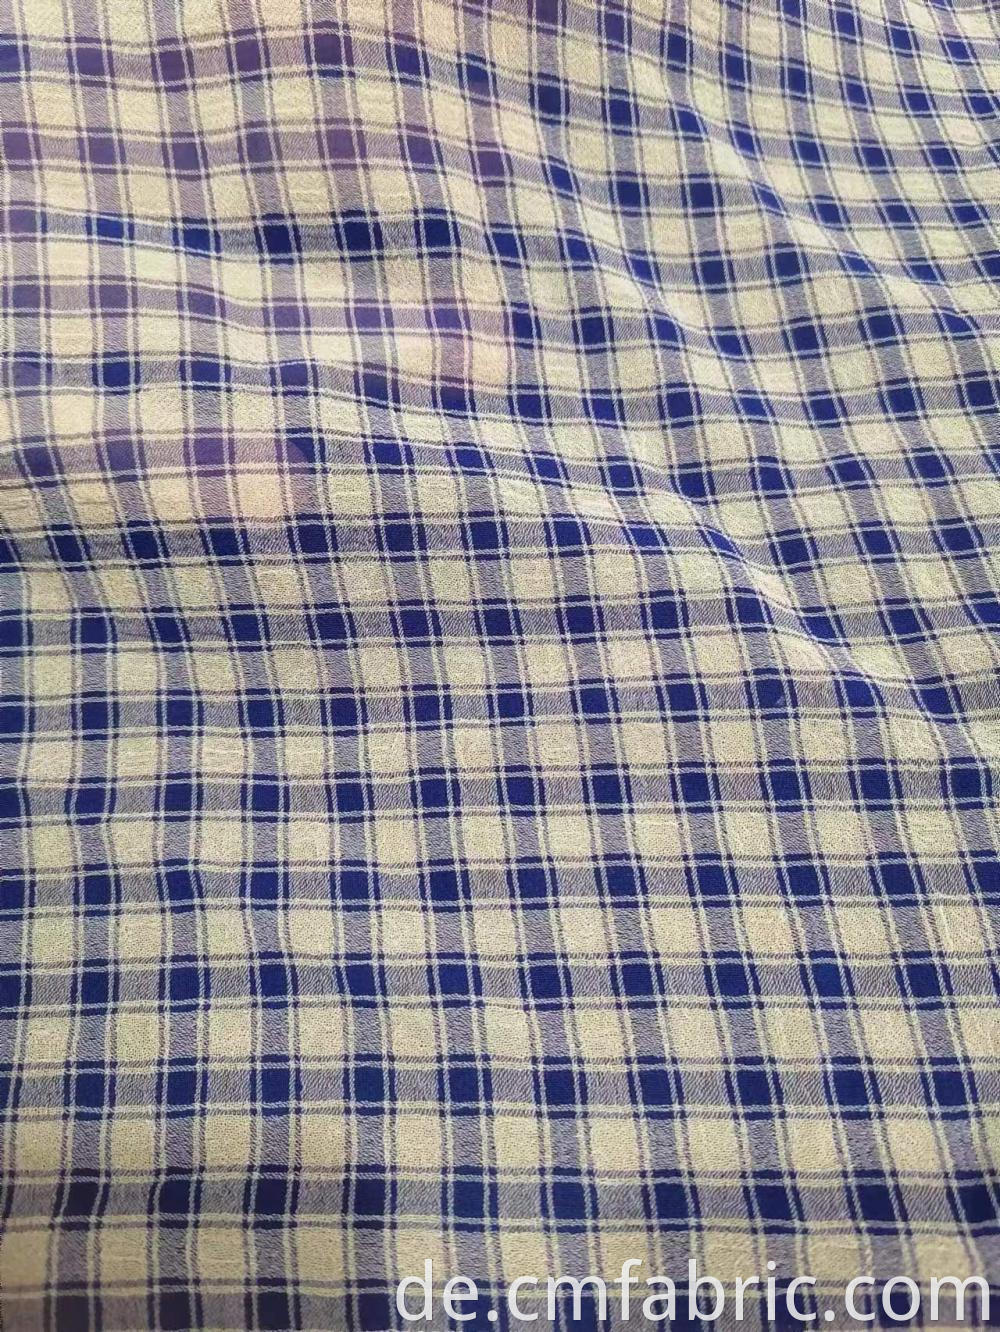 Cationic Polyester Chiffon Check Fabric3 Jpg